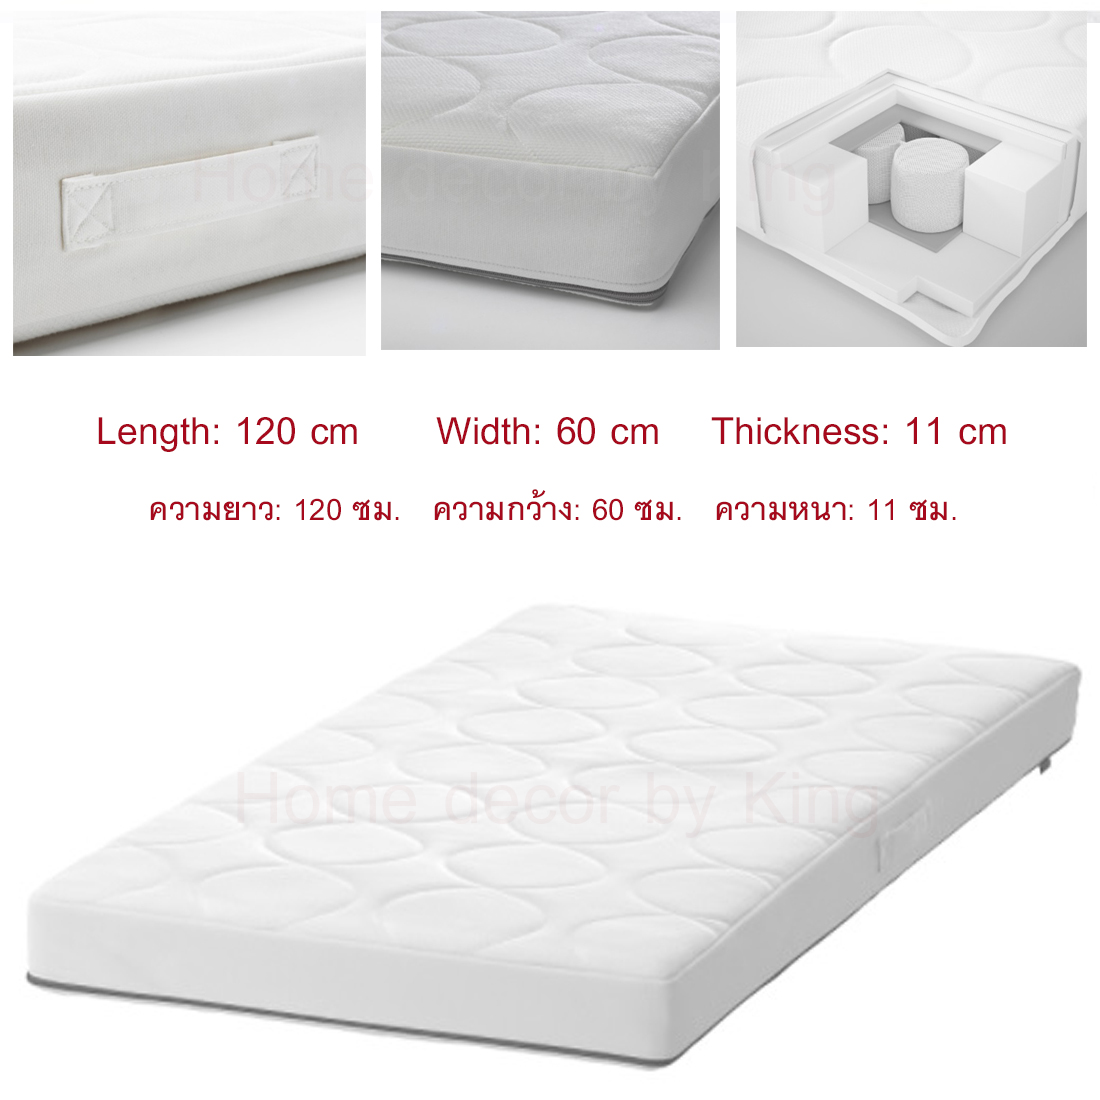 ที่นอนเด็กอ่อน,ฟูกสำหรับเตียงเด็กอ่อนแบบพ็อกเก็ตสปริง สีขาว ขนาด 60x120 หนา 11 ซม.